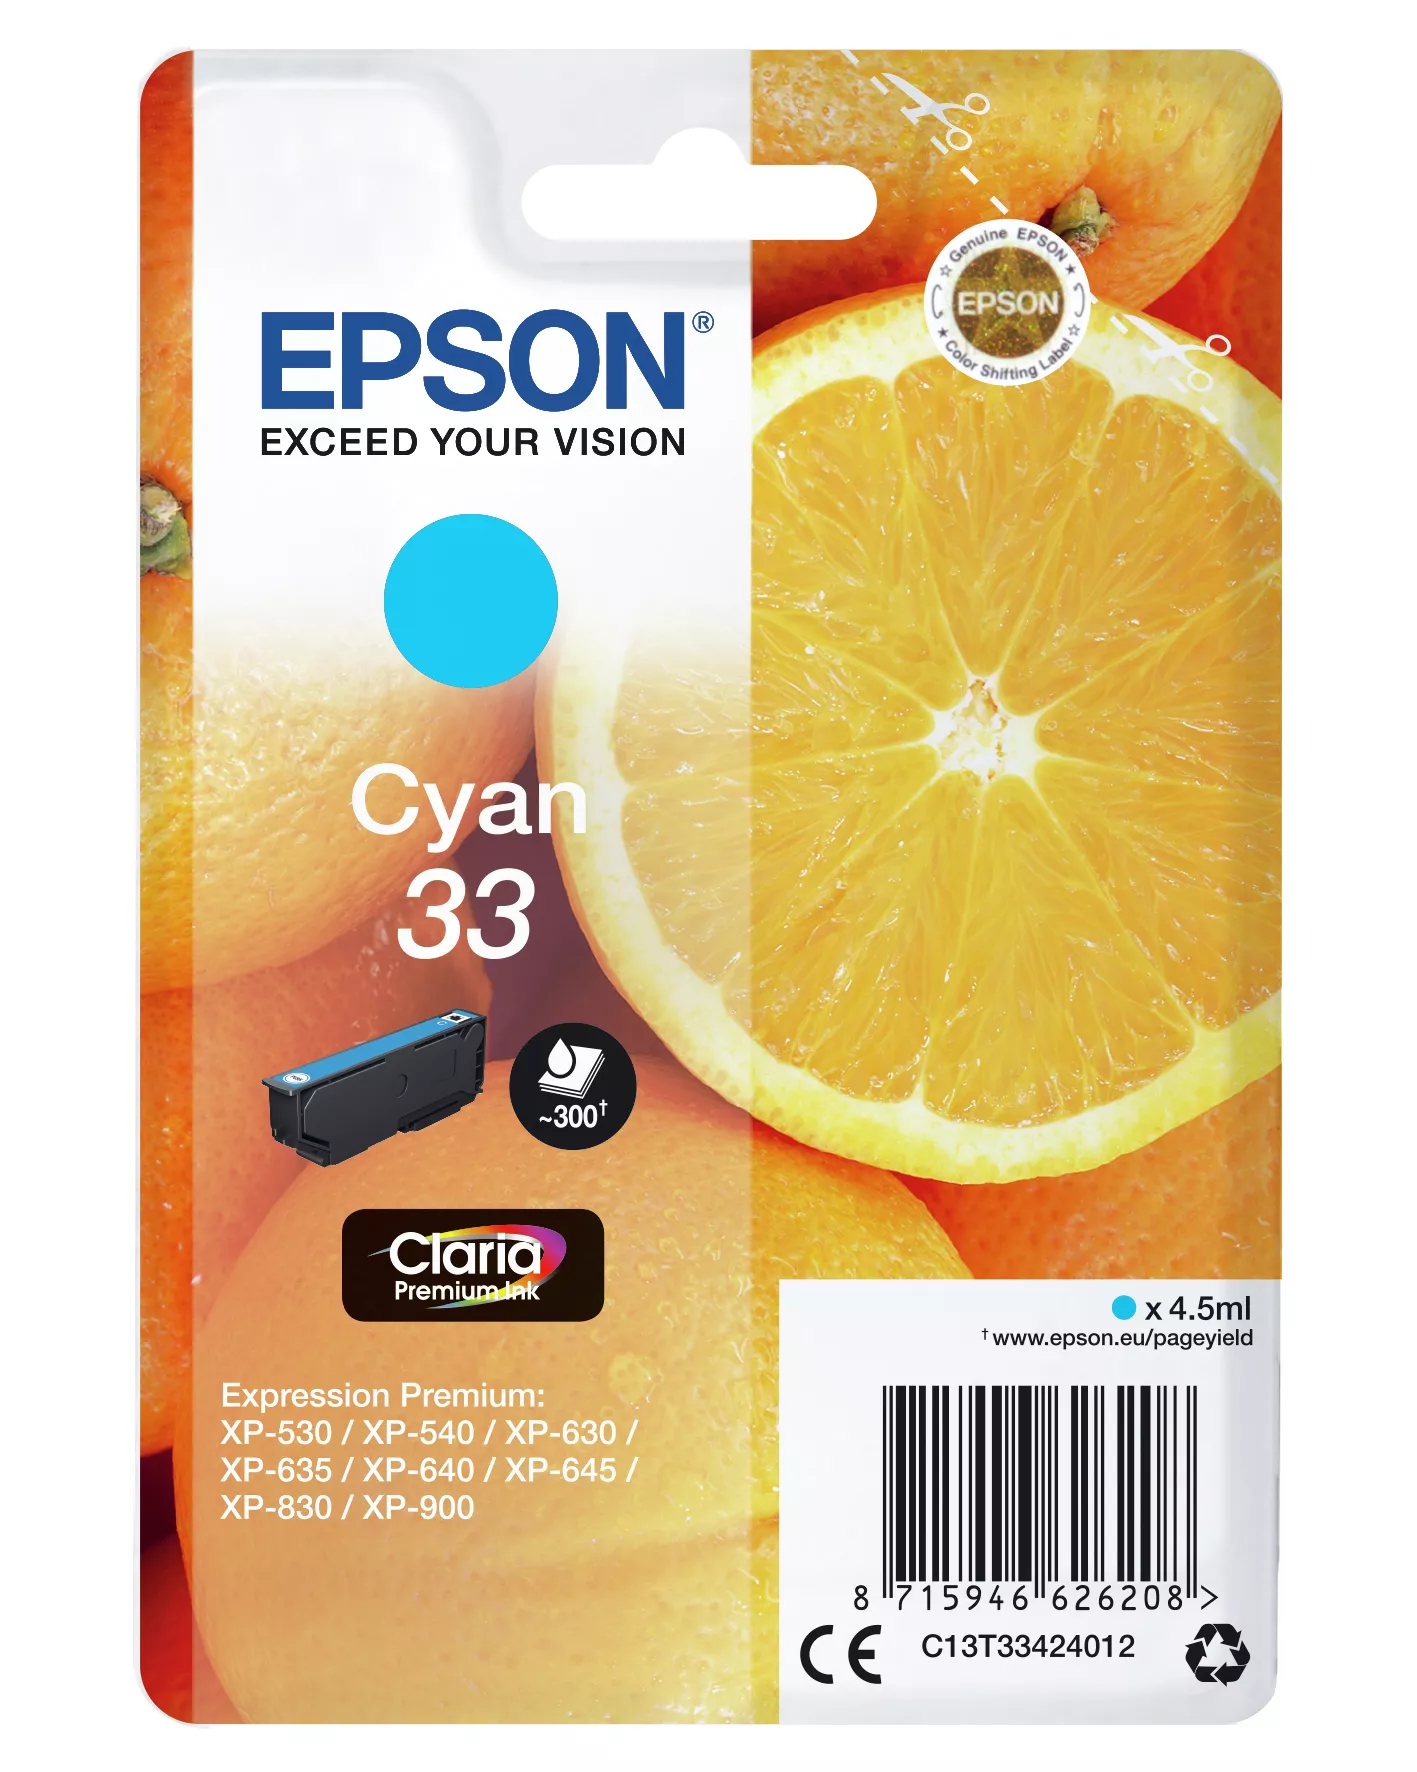 Achat EPSON Cartouche Oranges Encre Claria Premium Cyan sur hello RSE - visuel 3